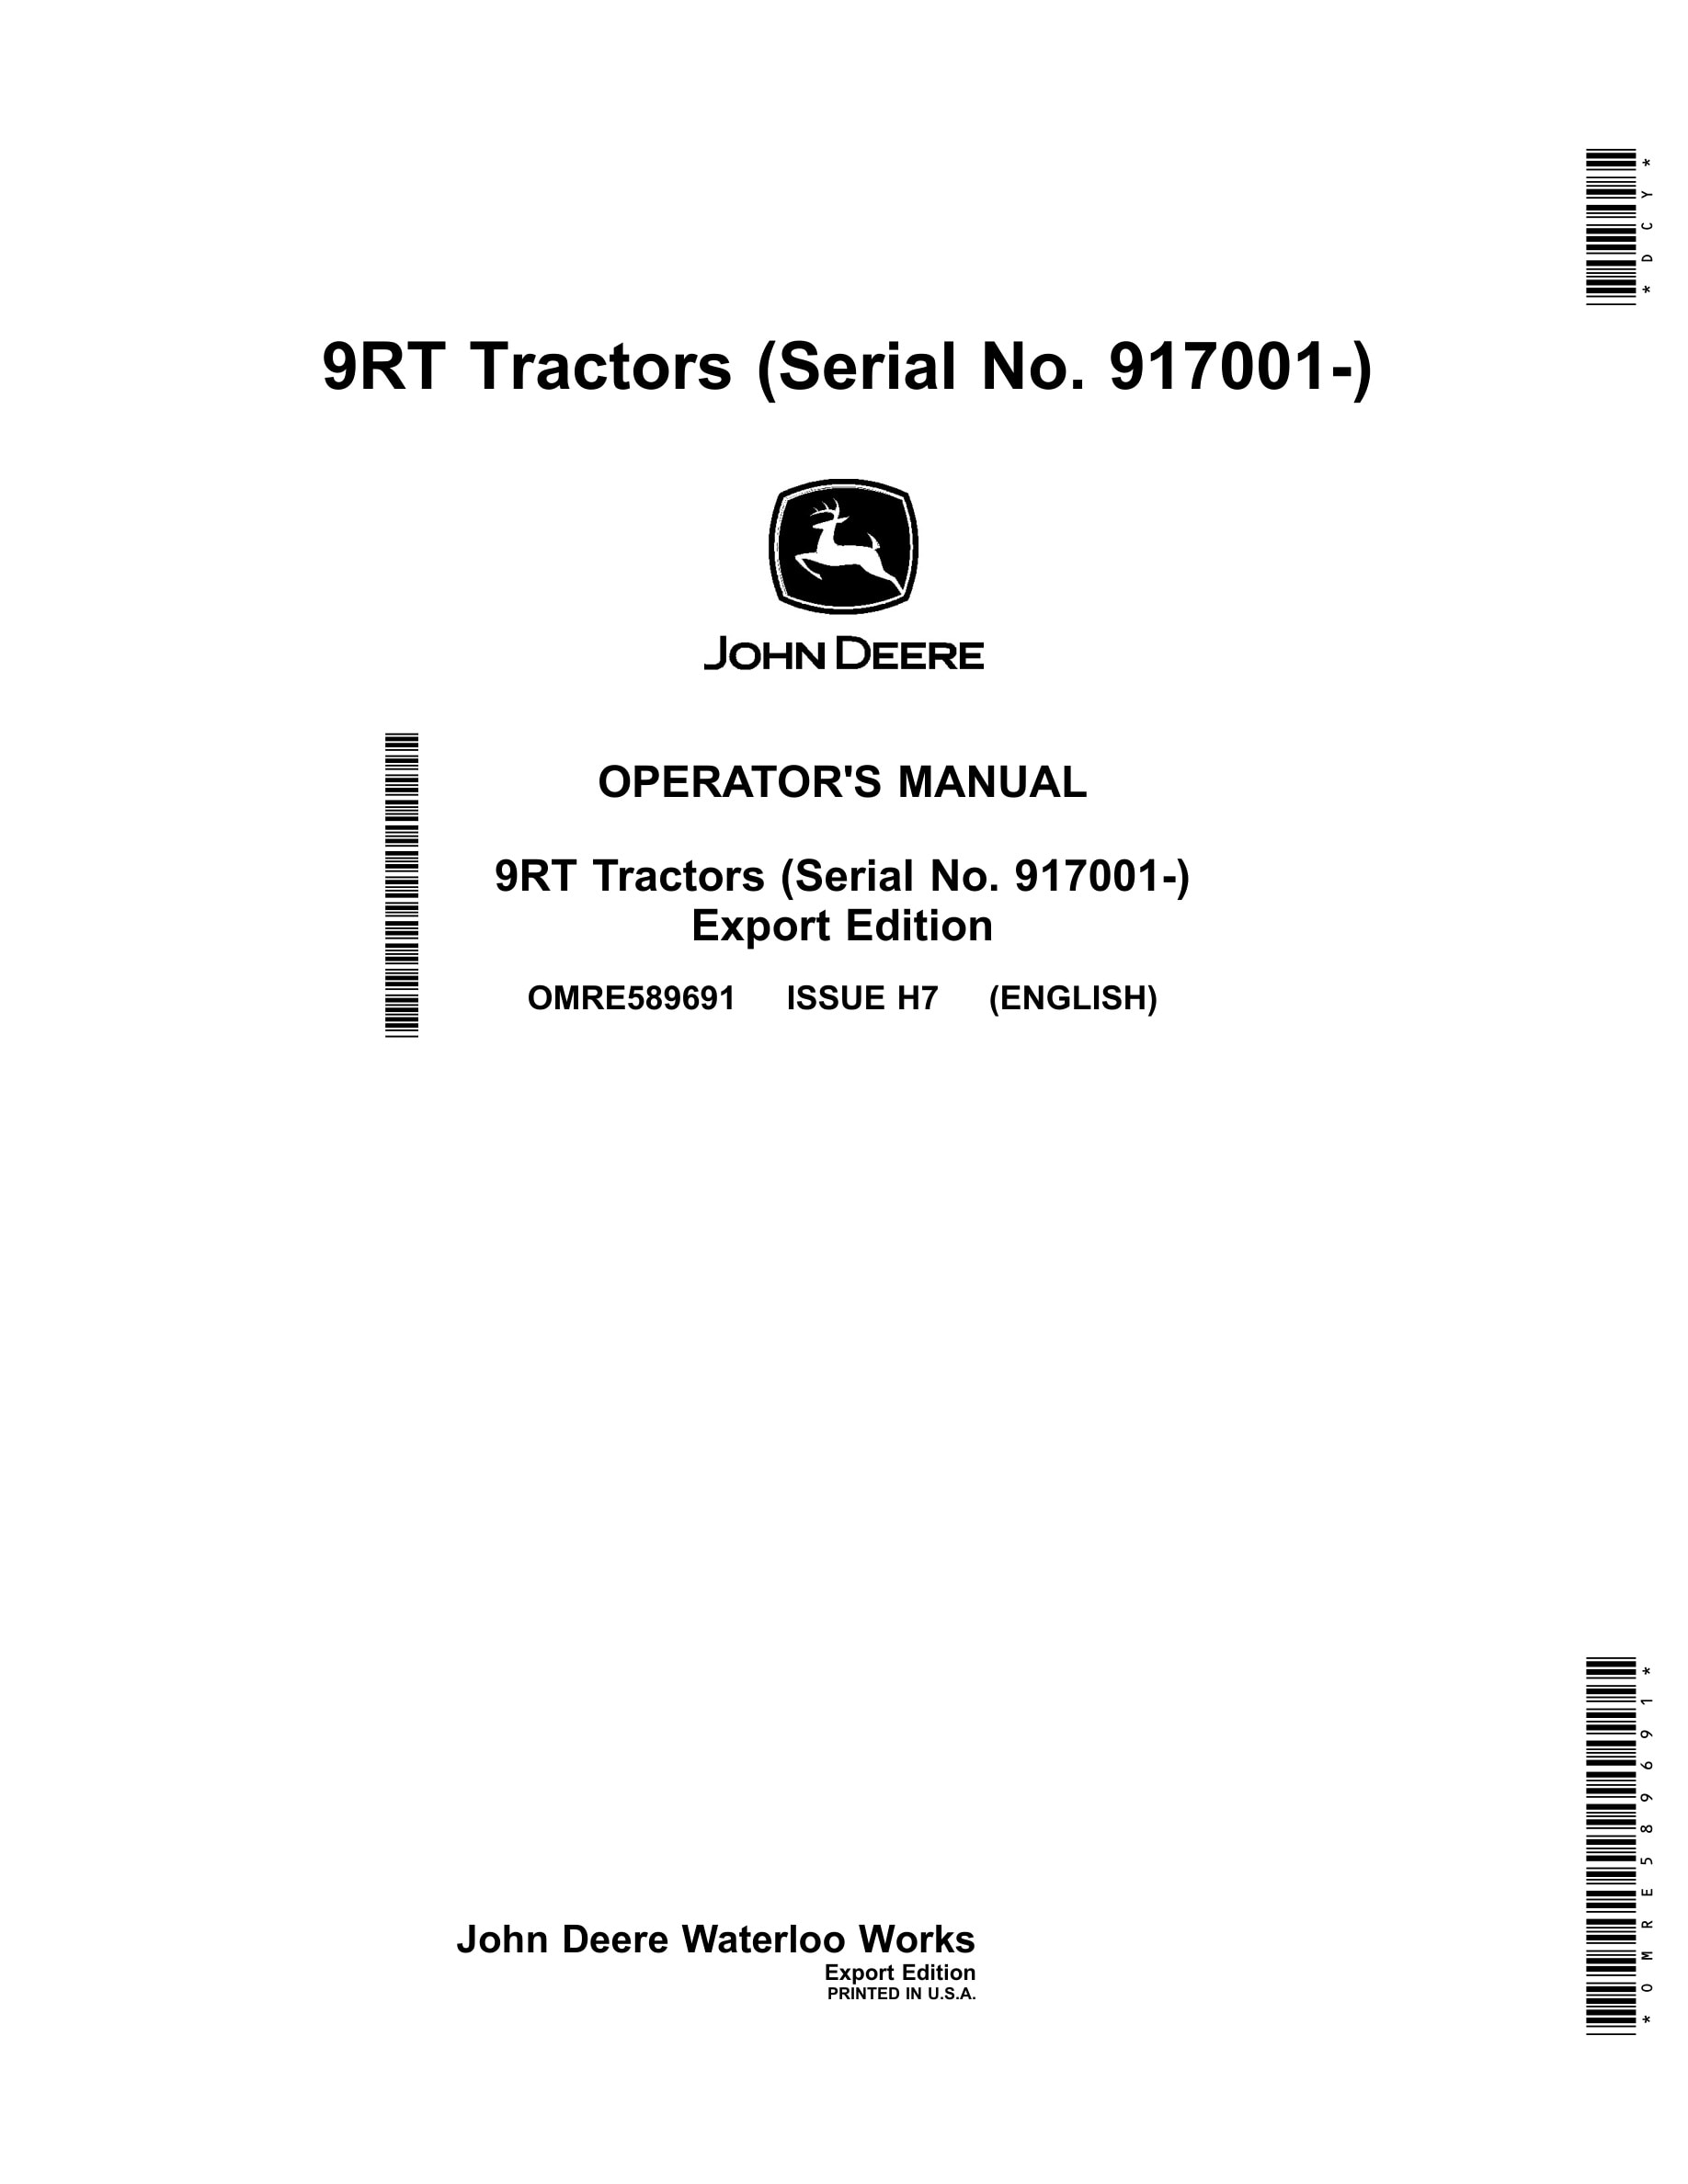 John Deere 9rx Tractors Operator Manuals OMRE589691-1